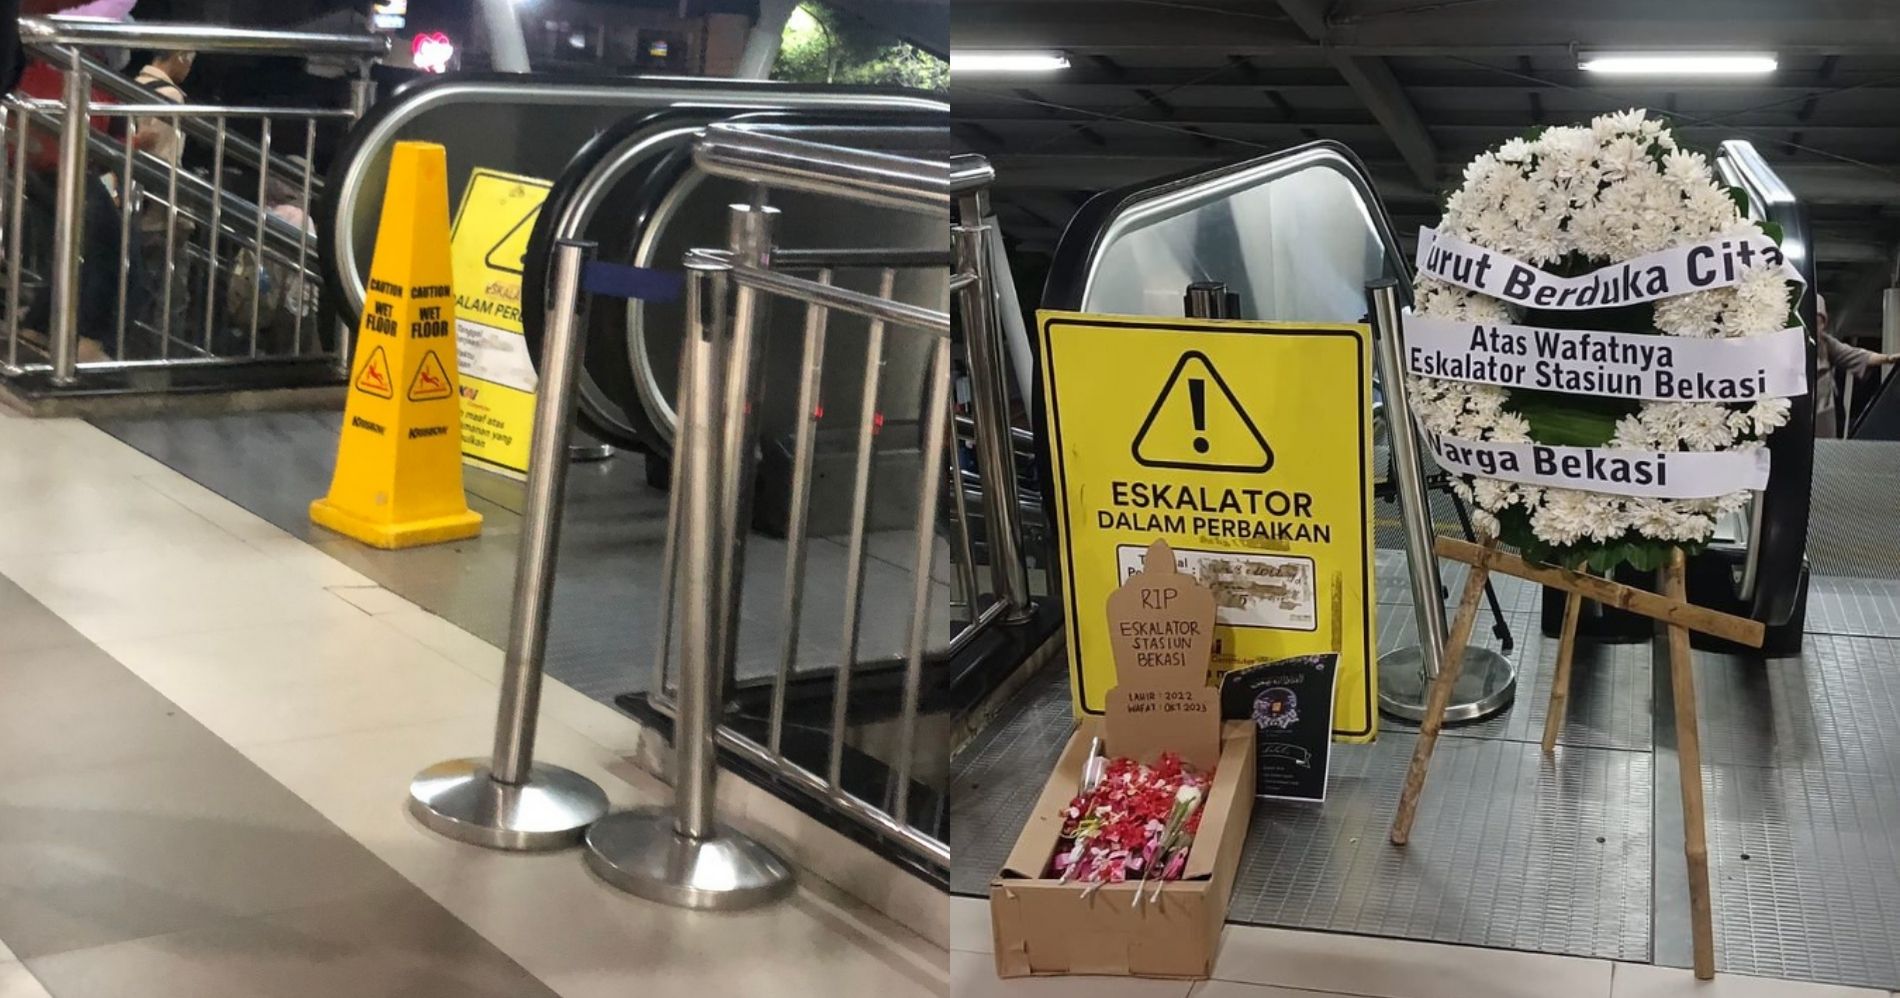 Kondisi Eskalator Stasiun Bekasi yang Terus Diupdate oleh @PenerbangRoket - Image: X @PenerbangRoket